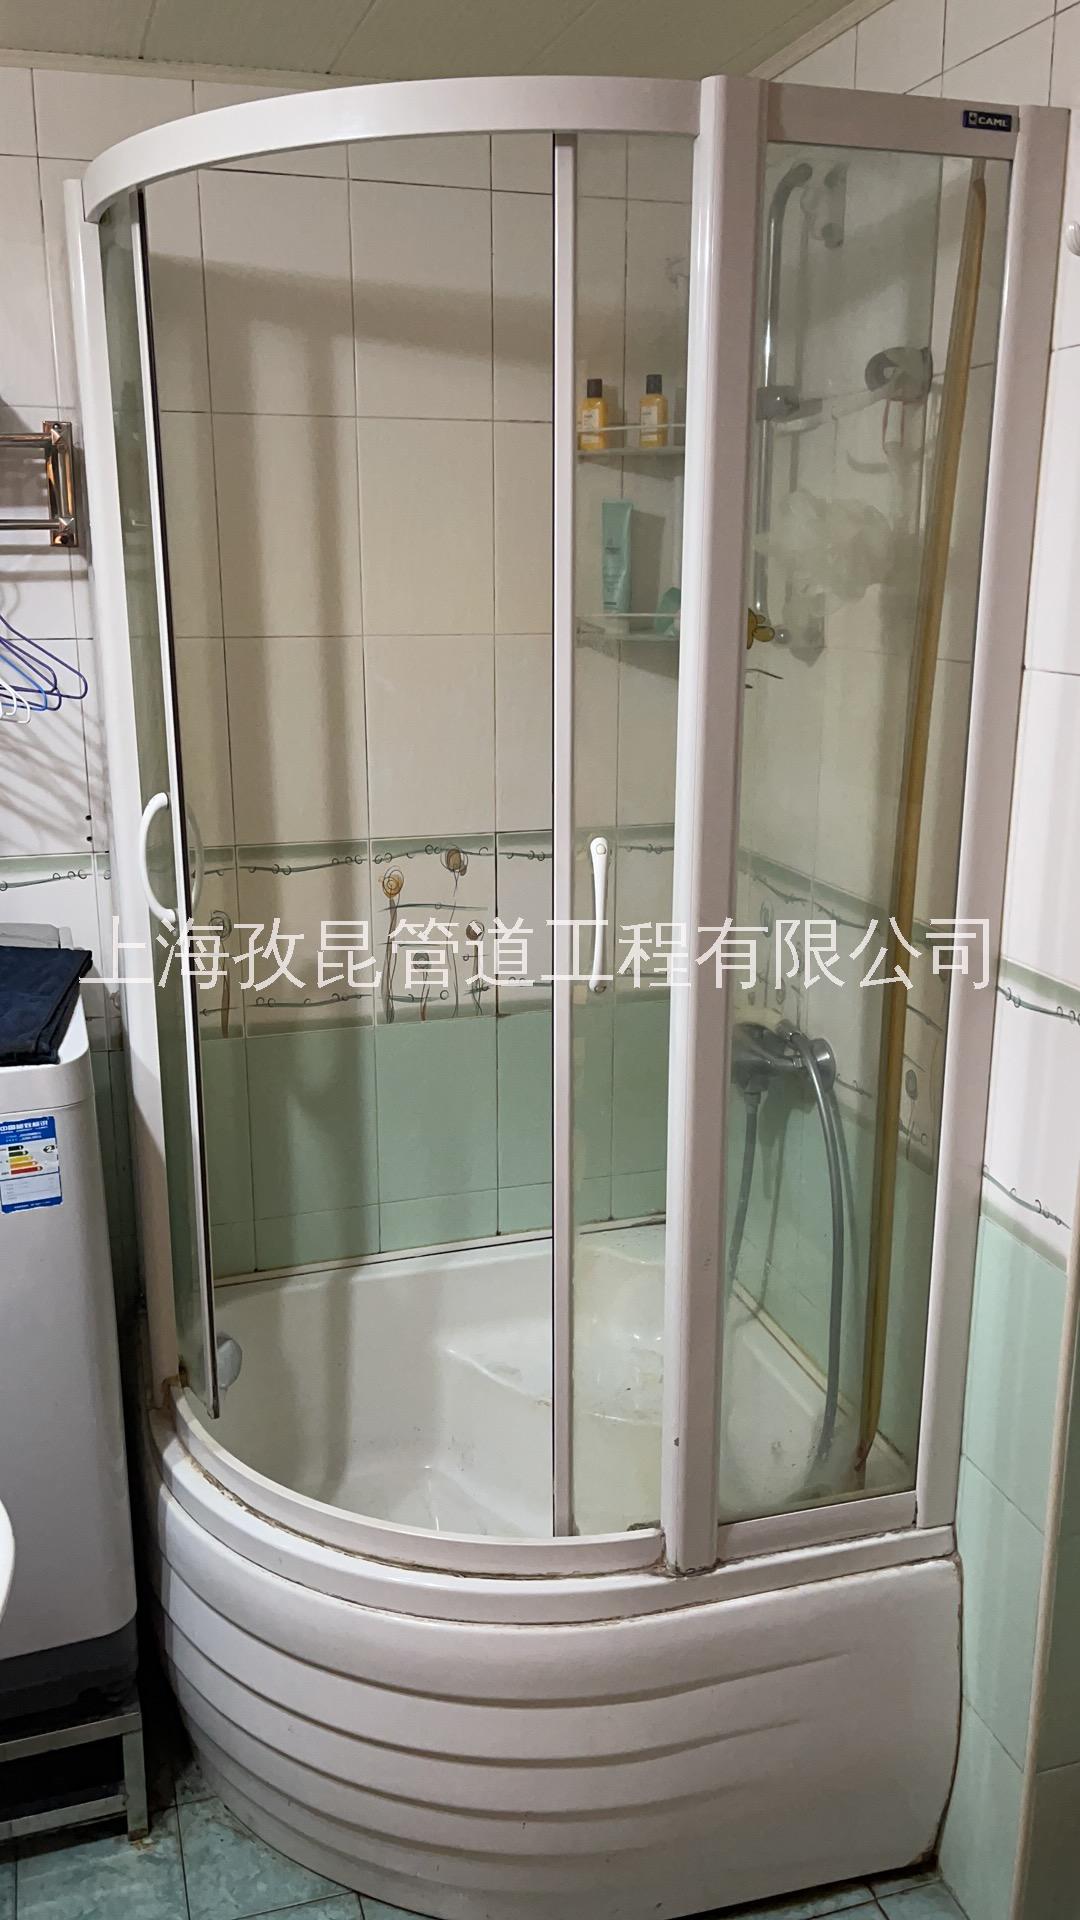 上海浦东 淋浴房玻璃门维修 淋浴房移门维修拆解 淋浴房漏水如何维修